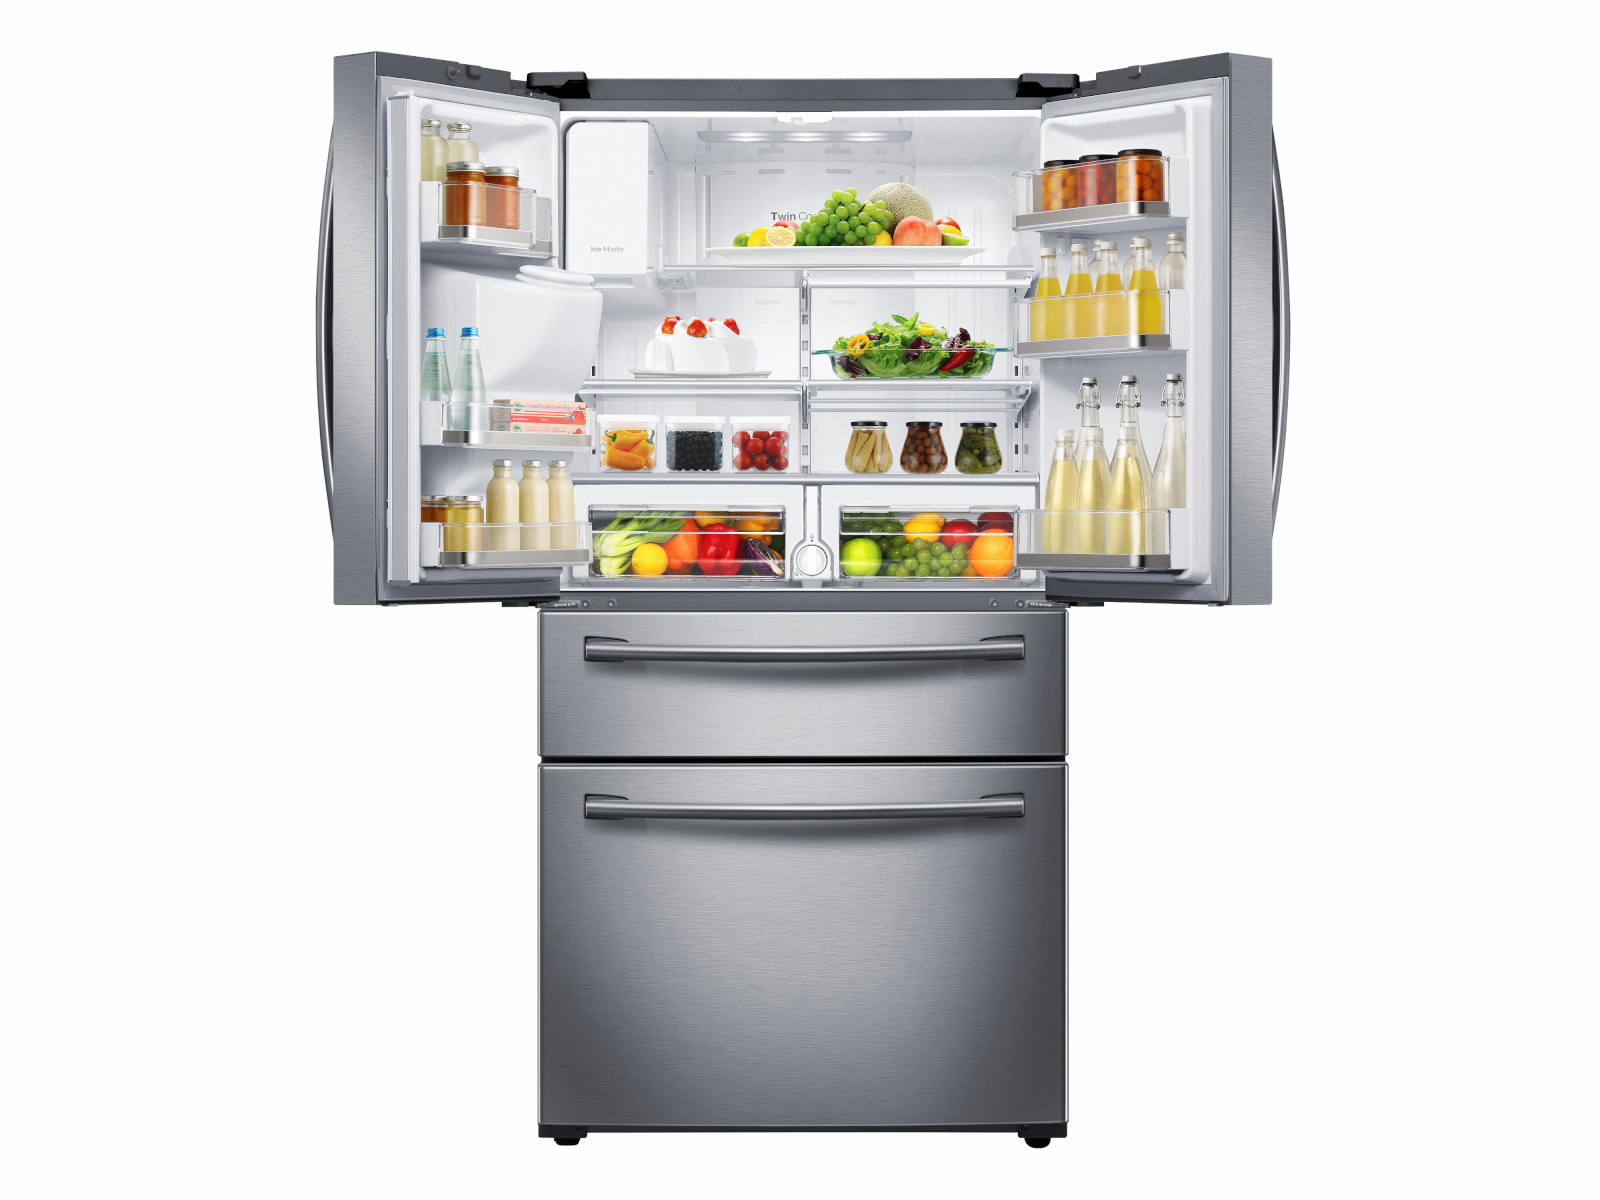 https://image-us.samsung.com/SamsungUS/home/home-appliances/refrigerators/4-door-french-door/pdp/rf28hmedbsr/gallery/02_Refrigerator_French-Door_RF28HMEDBSR_Top-Doors_Open_With_Food_Silver.jpg?$product-details-jpg$